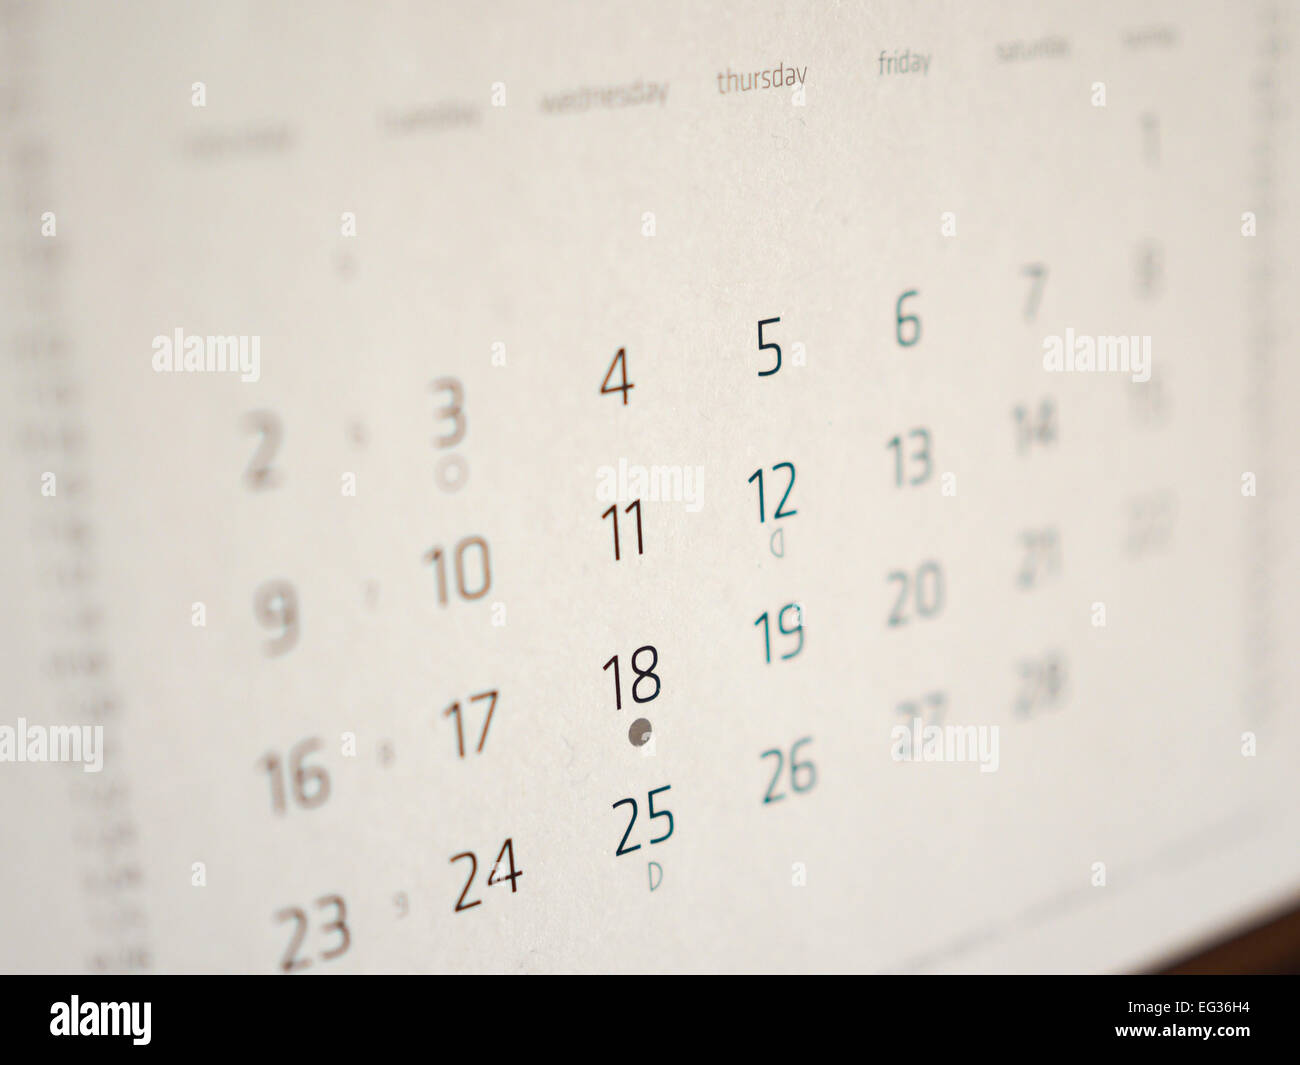 Dettaglio di una pagina di un calendario con le date Foto Stock